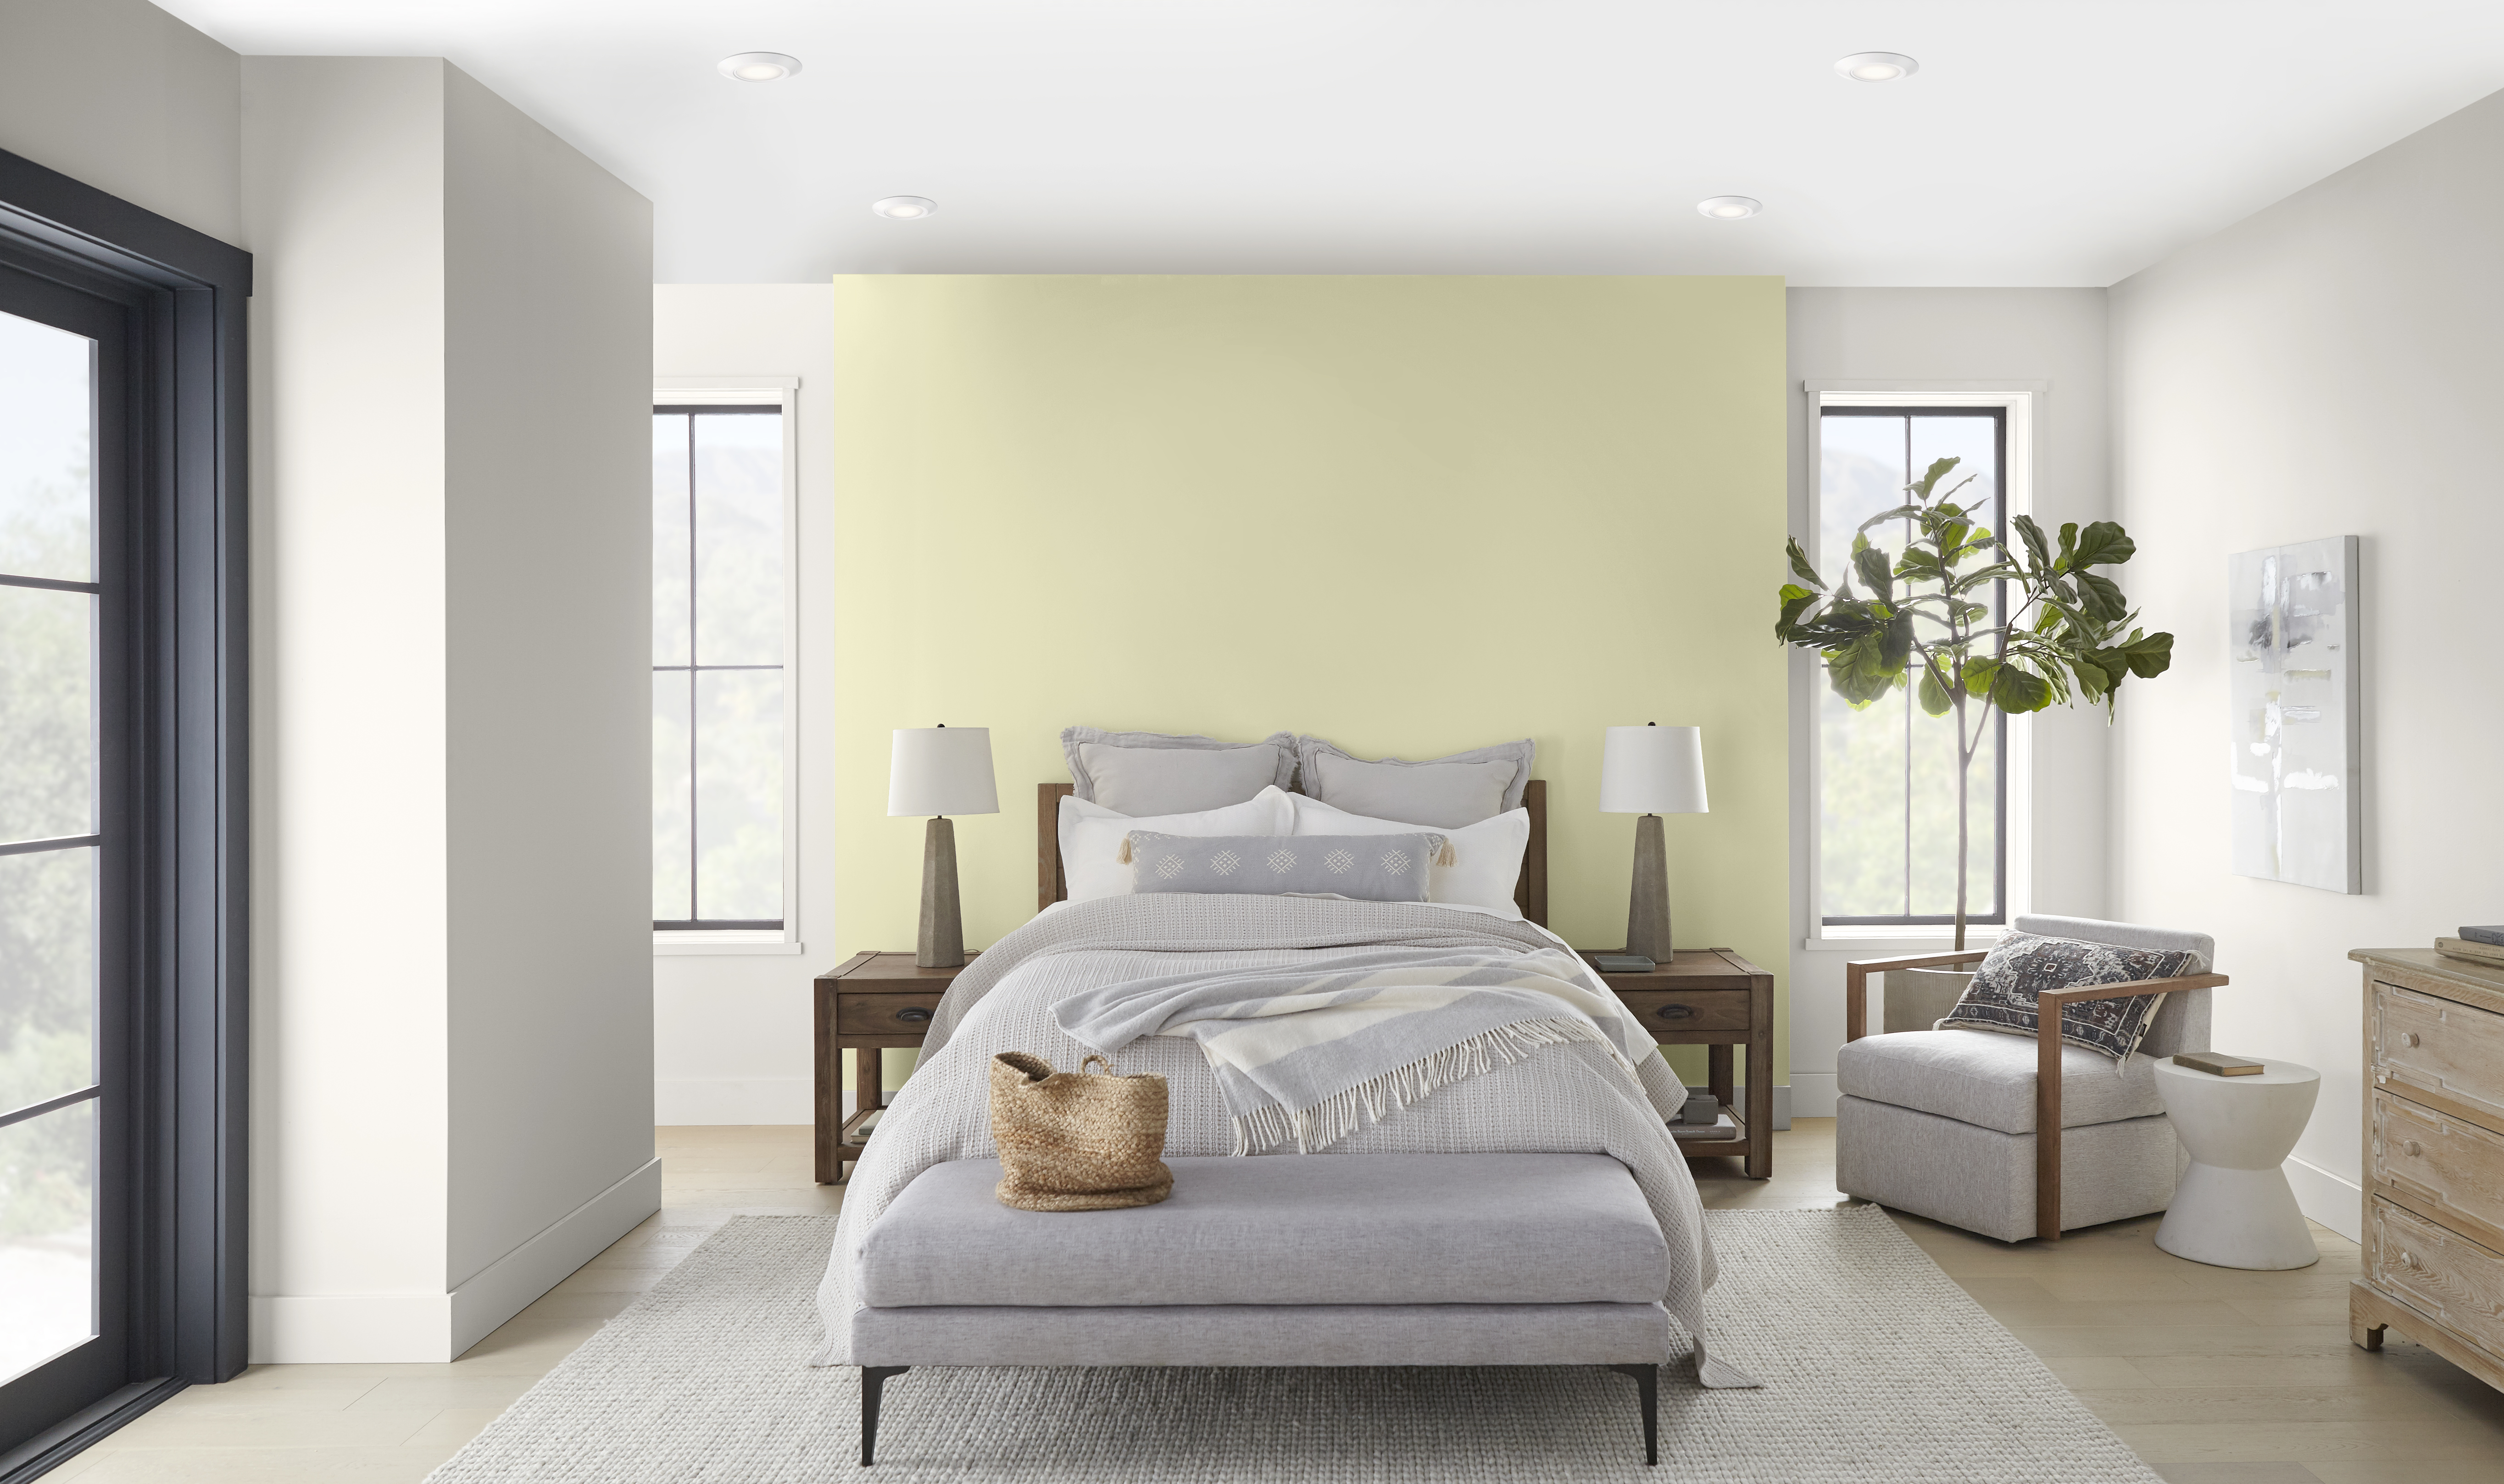 Une chambre à coucher lumineuse et aérée avec un mur d'accent dans la couleur Hybride derrière le lit